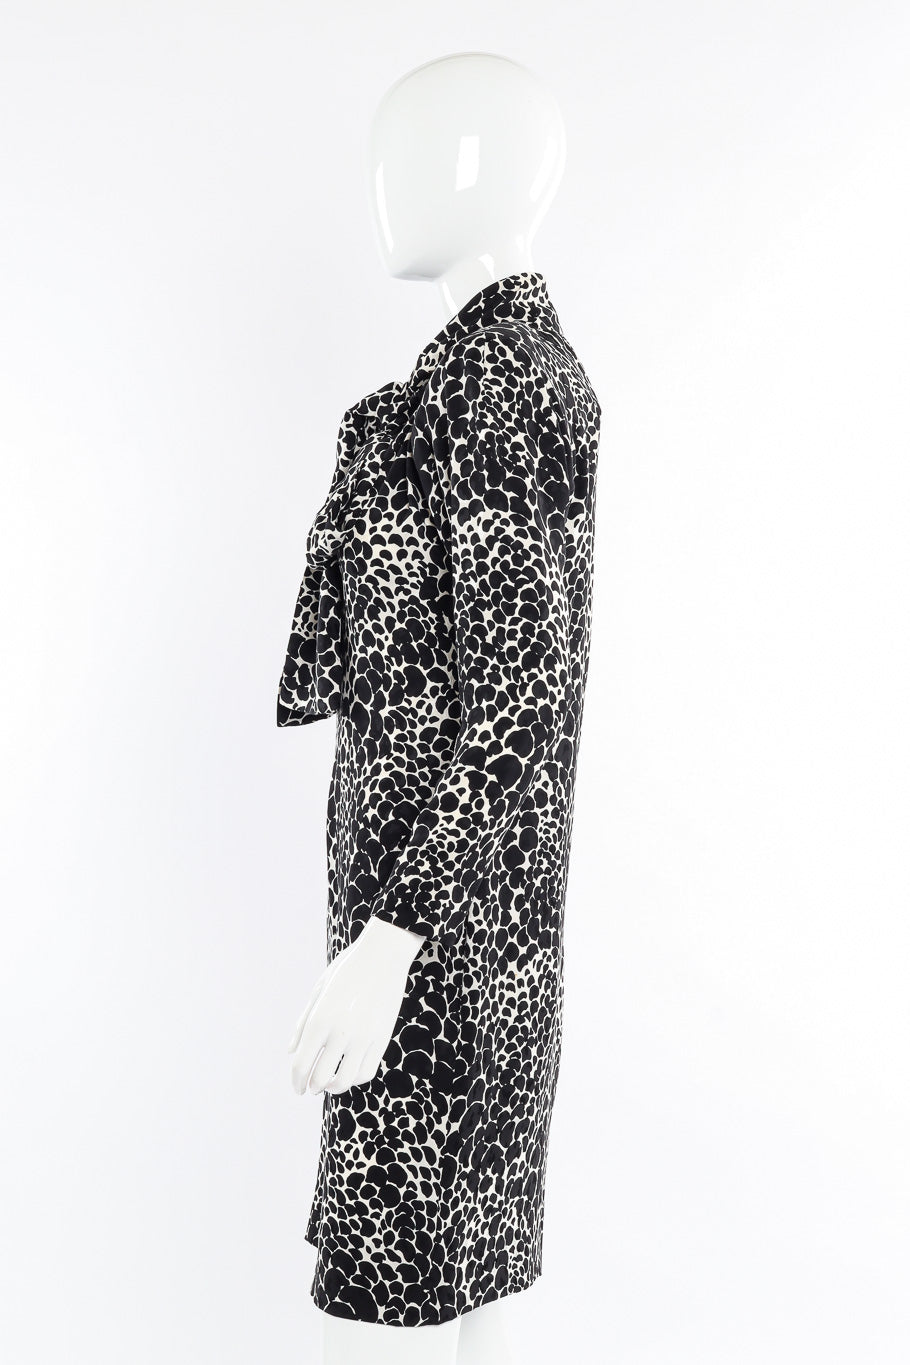 Vintage Saint Laurent Petal Print Silk Dress side view on mannequin closeup @Recessla